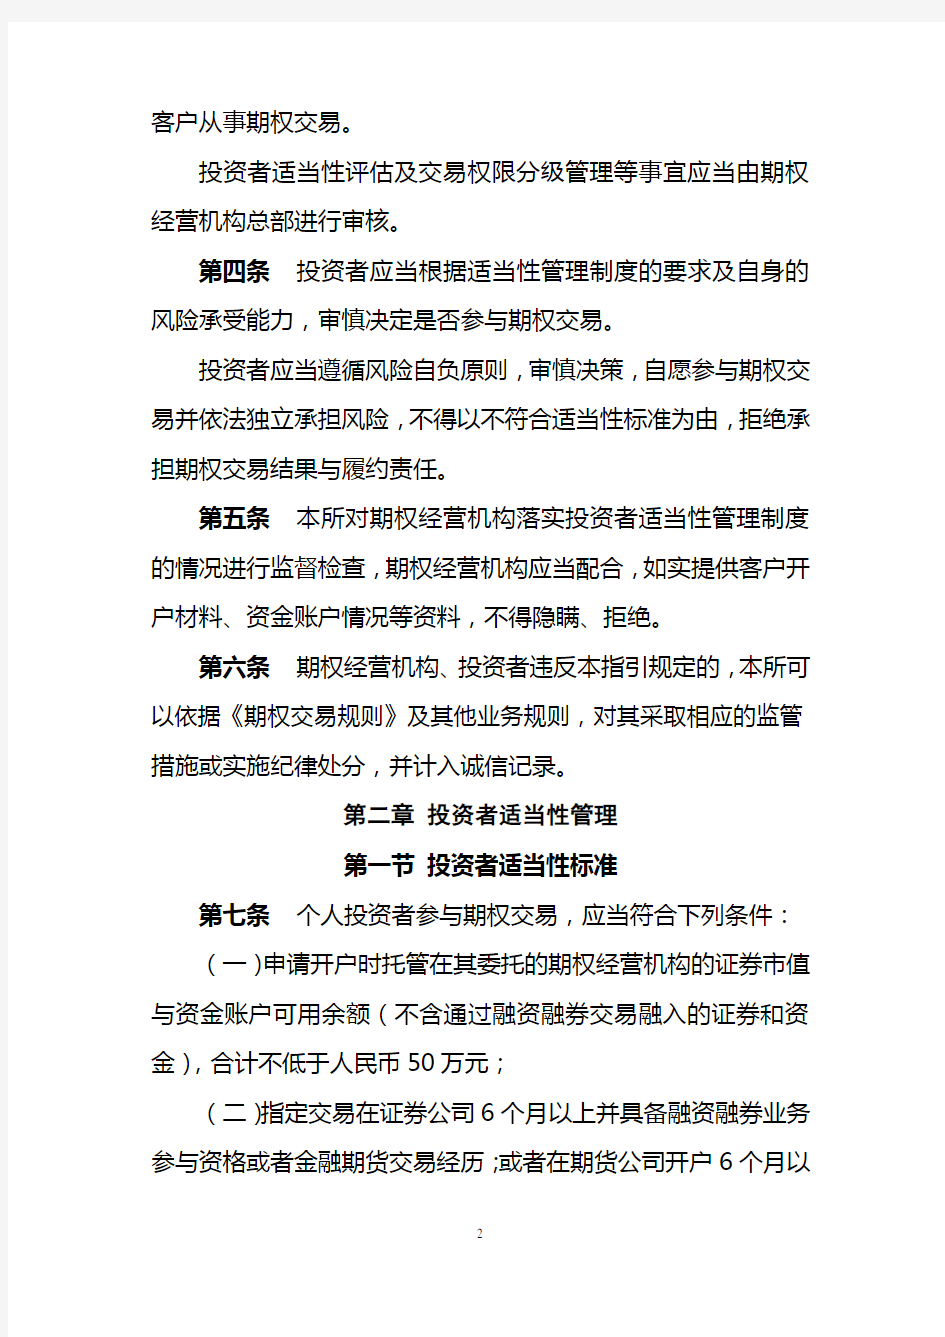 上海证券交易所股票期权试点投资者适当性管理指引